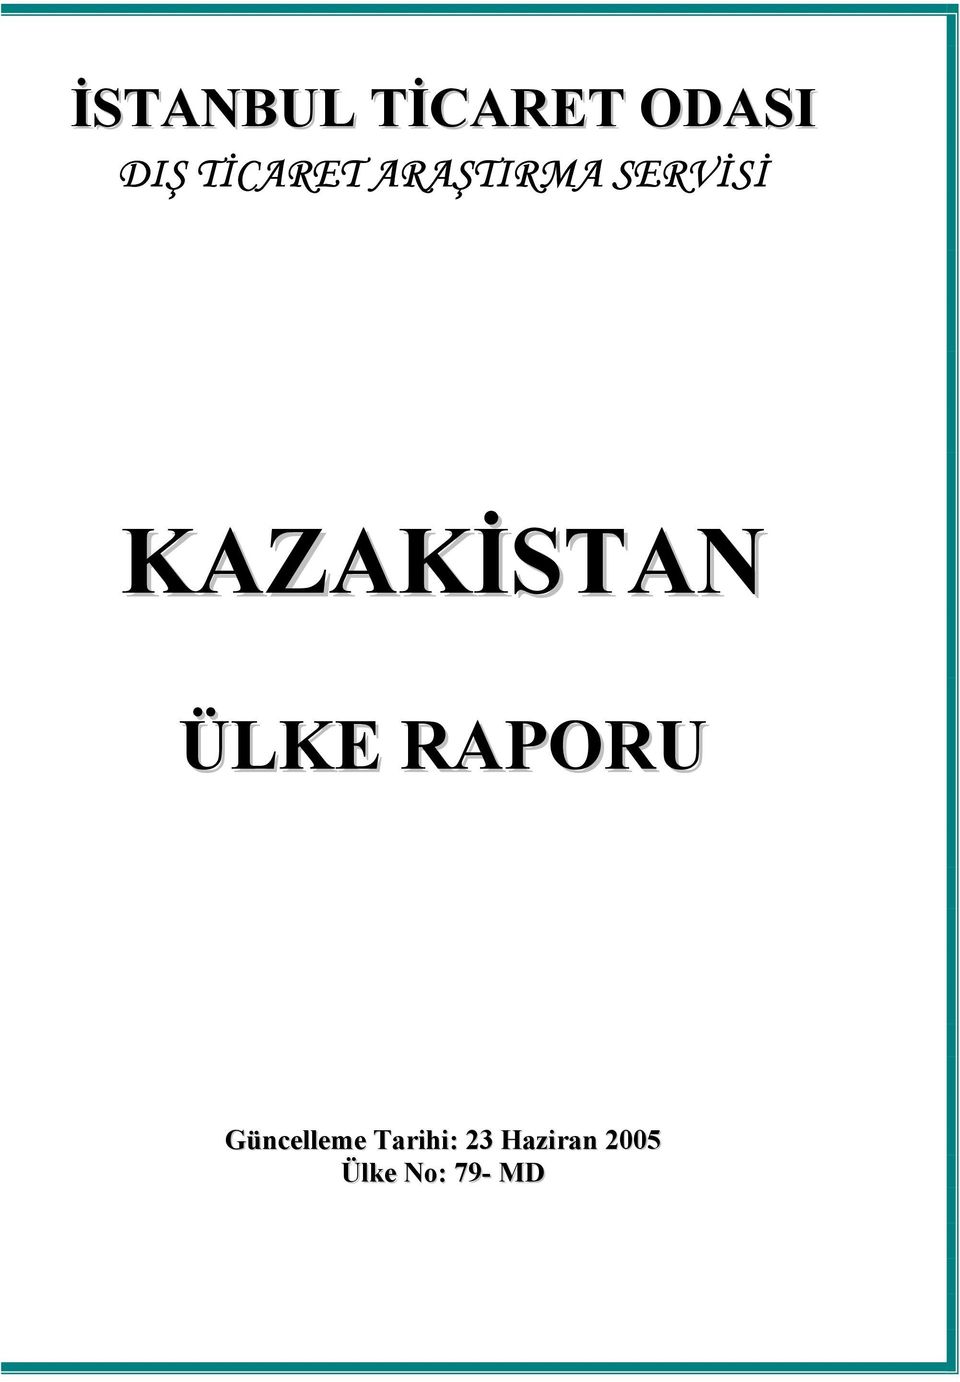 KAZAKİSTAN ÜLKE RAPORU